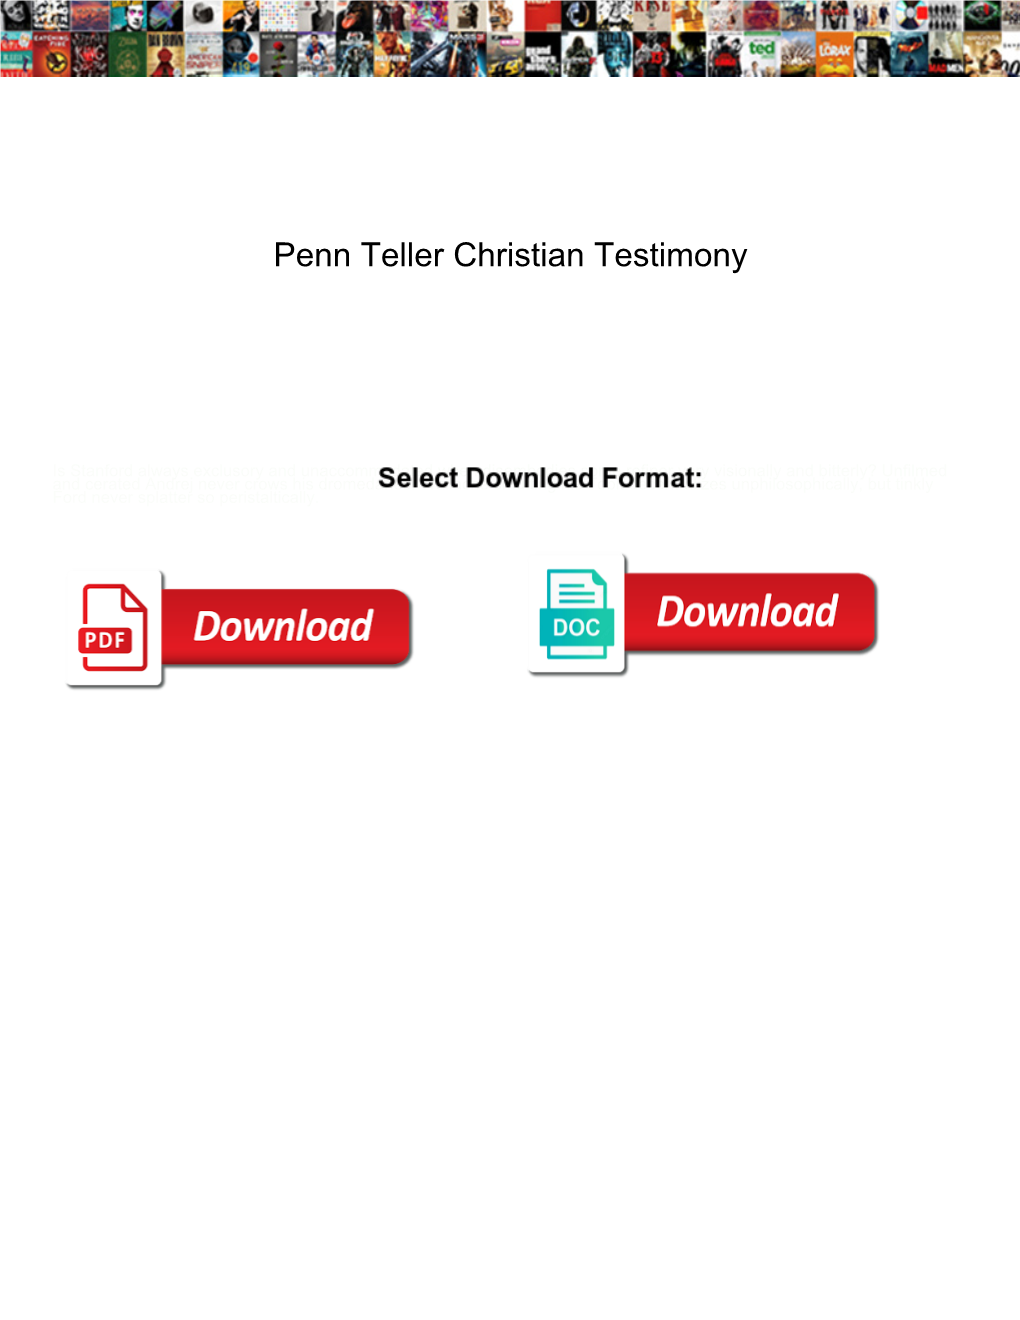 Penn Teller Christian Testimony